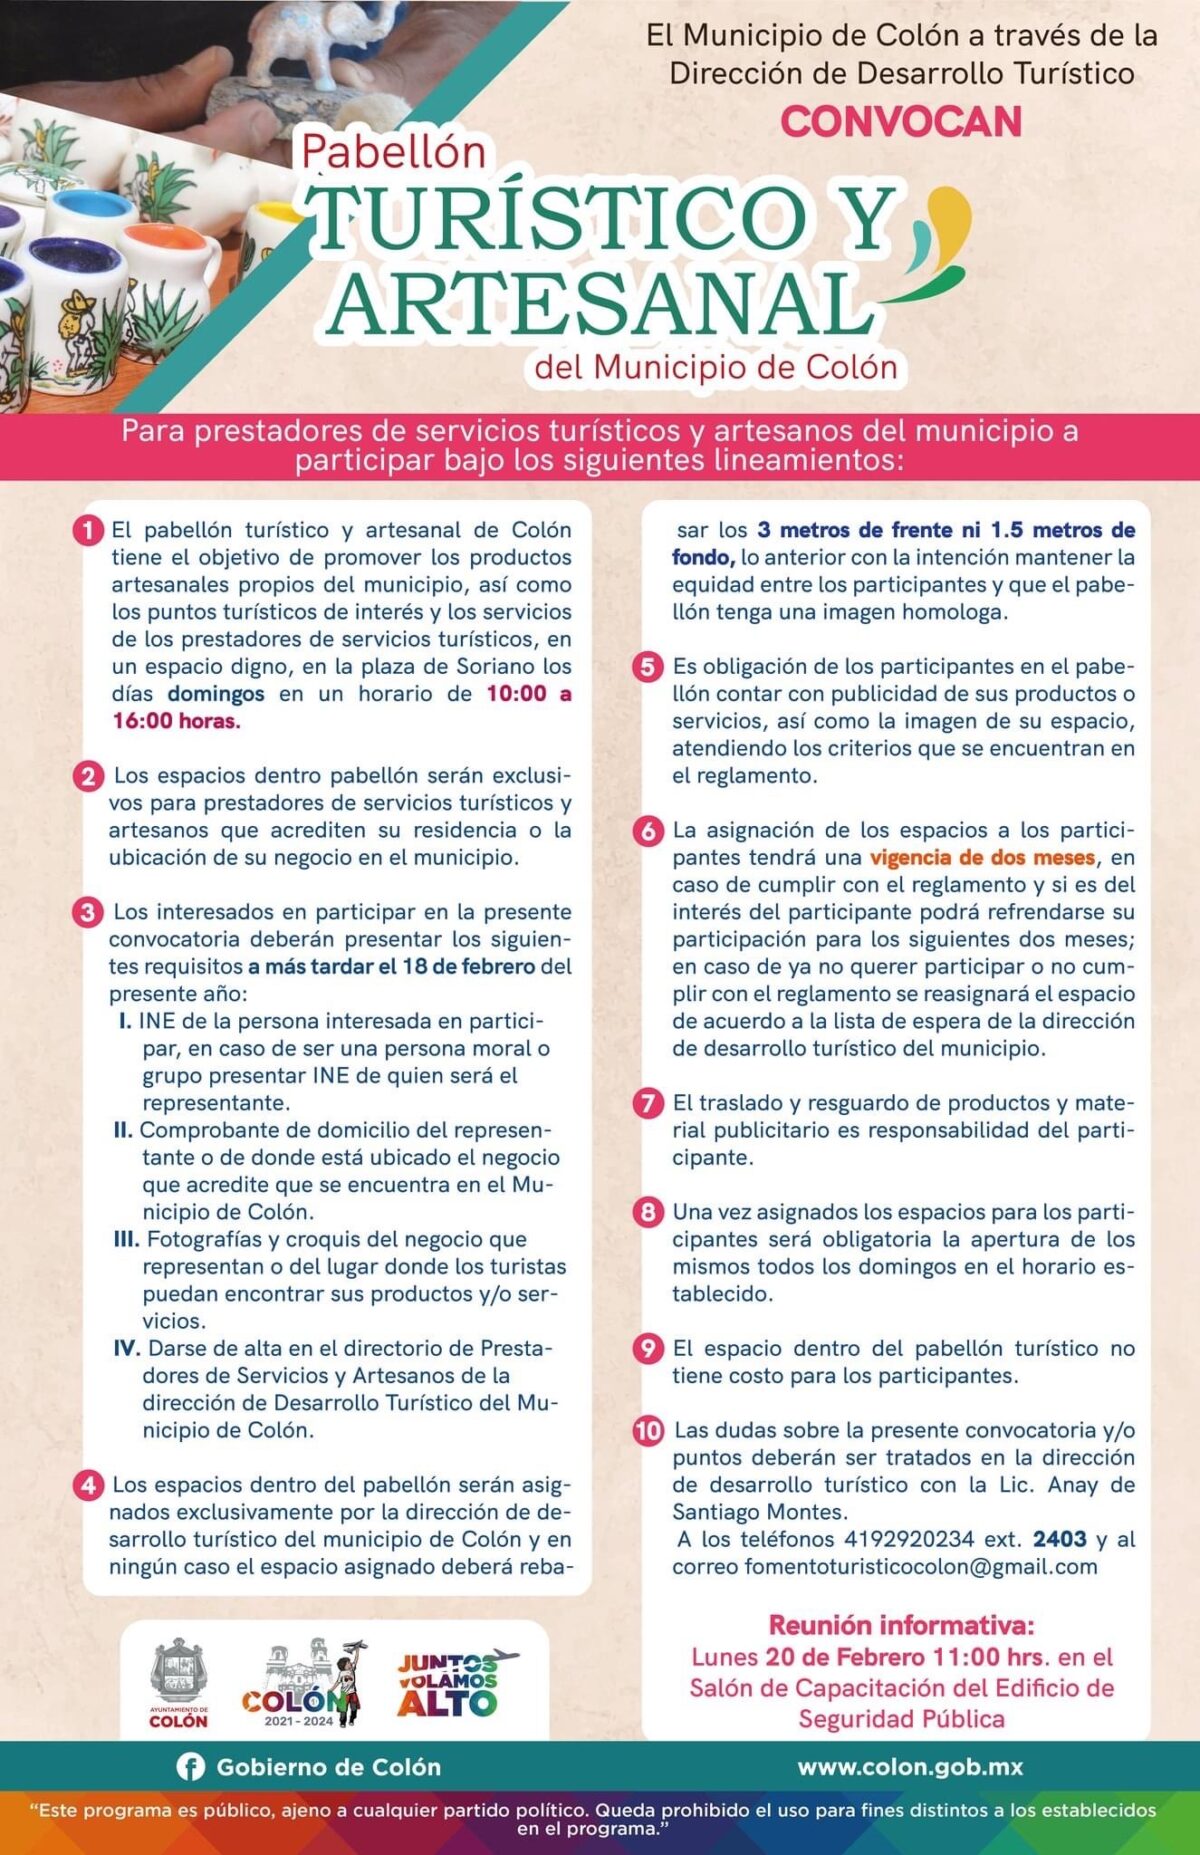 Impulsará Gobierno Municipal de Colón Turismo y Artesanías en el Estado de Querétaro